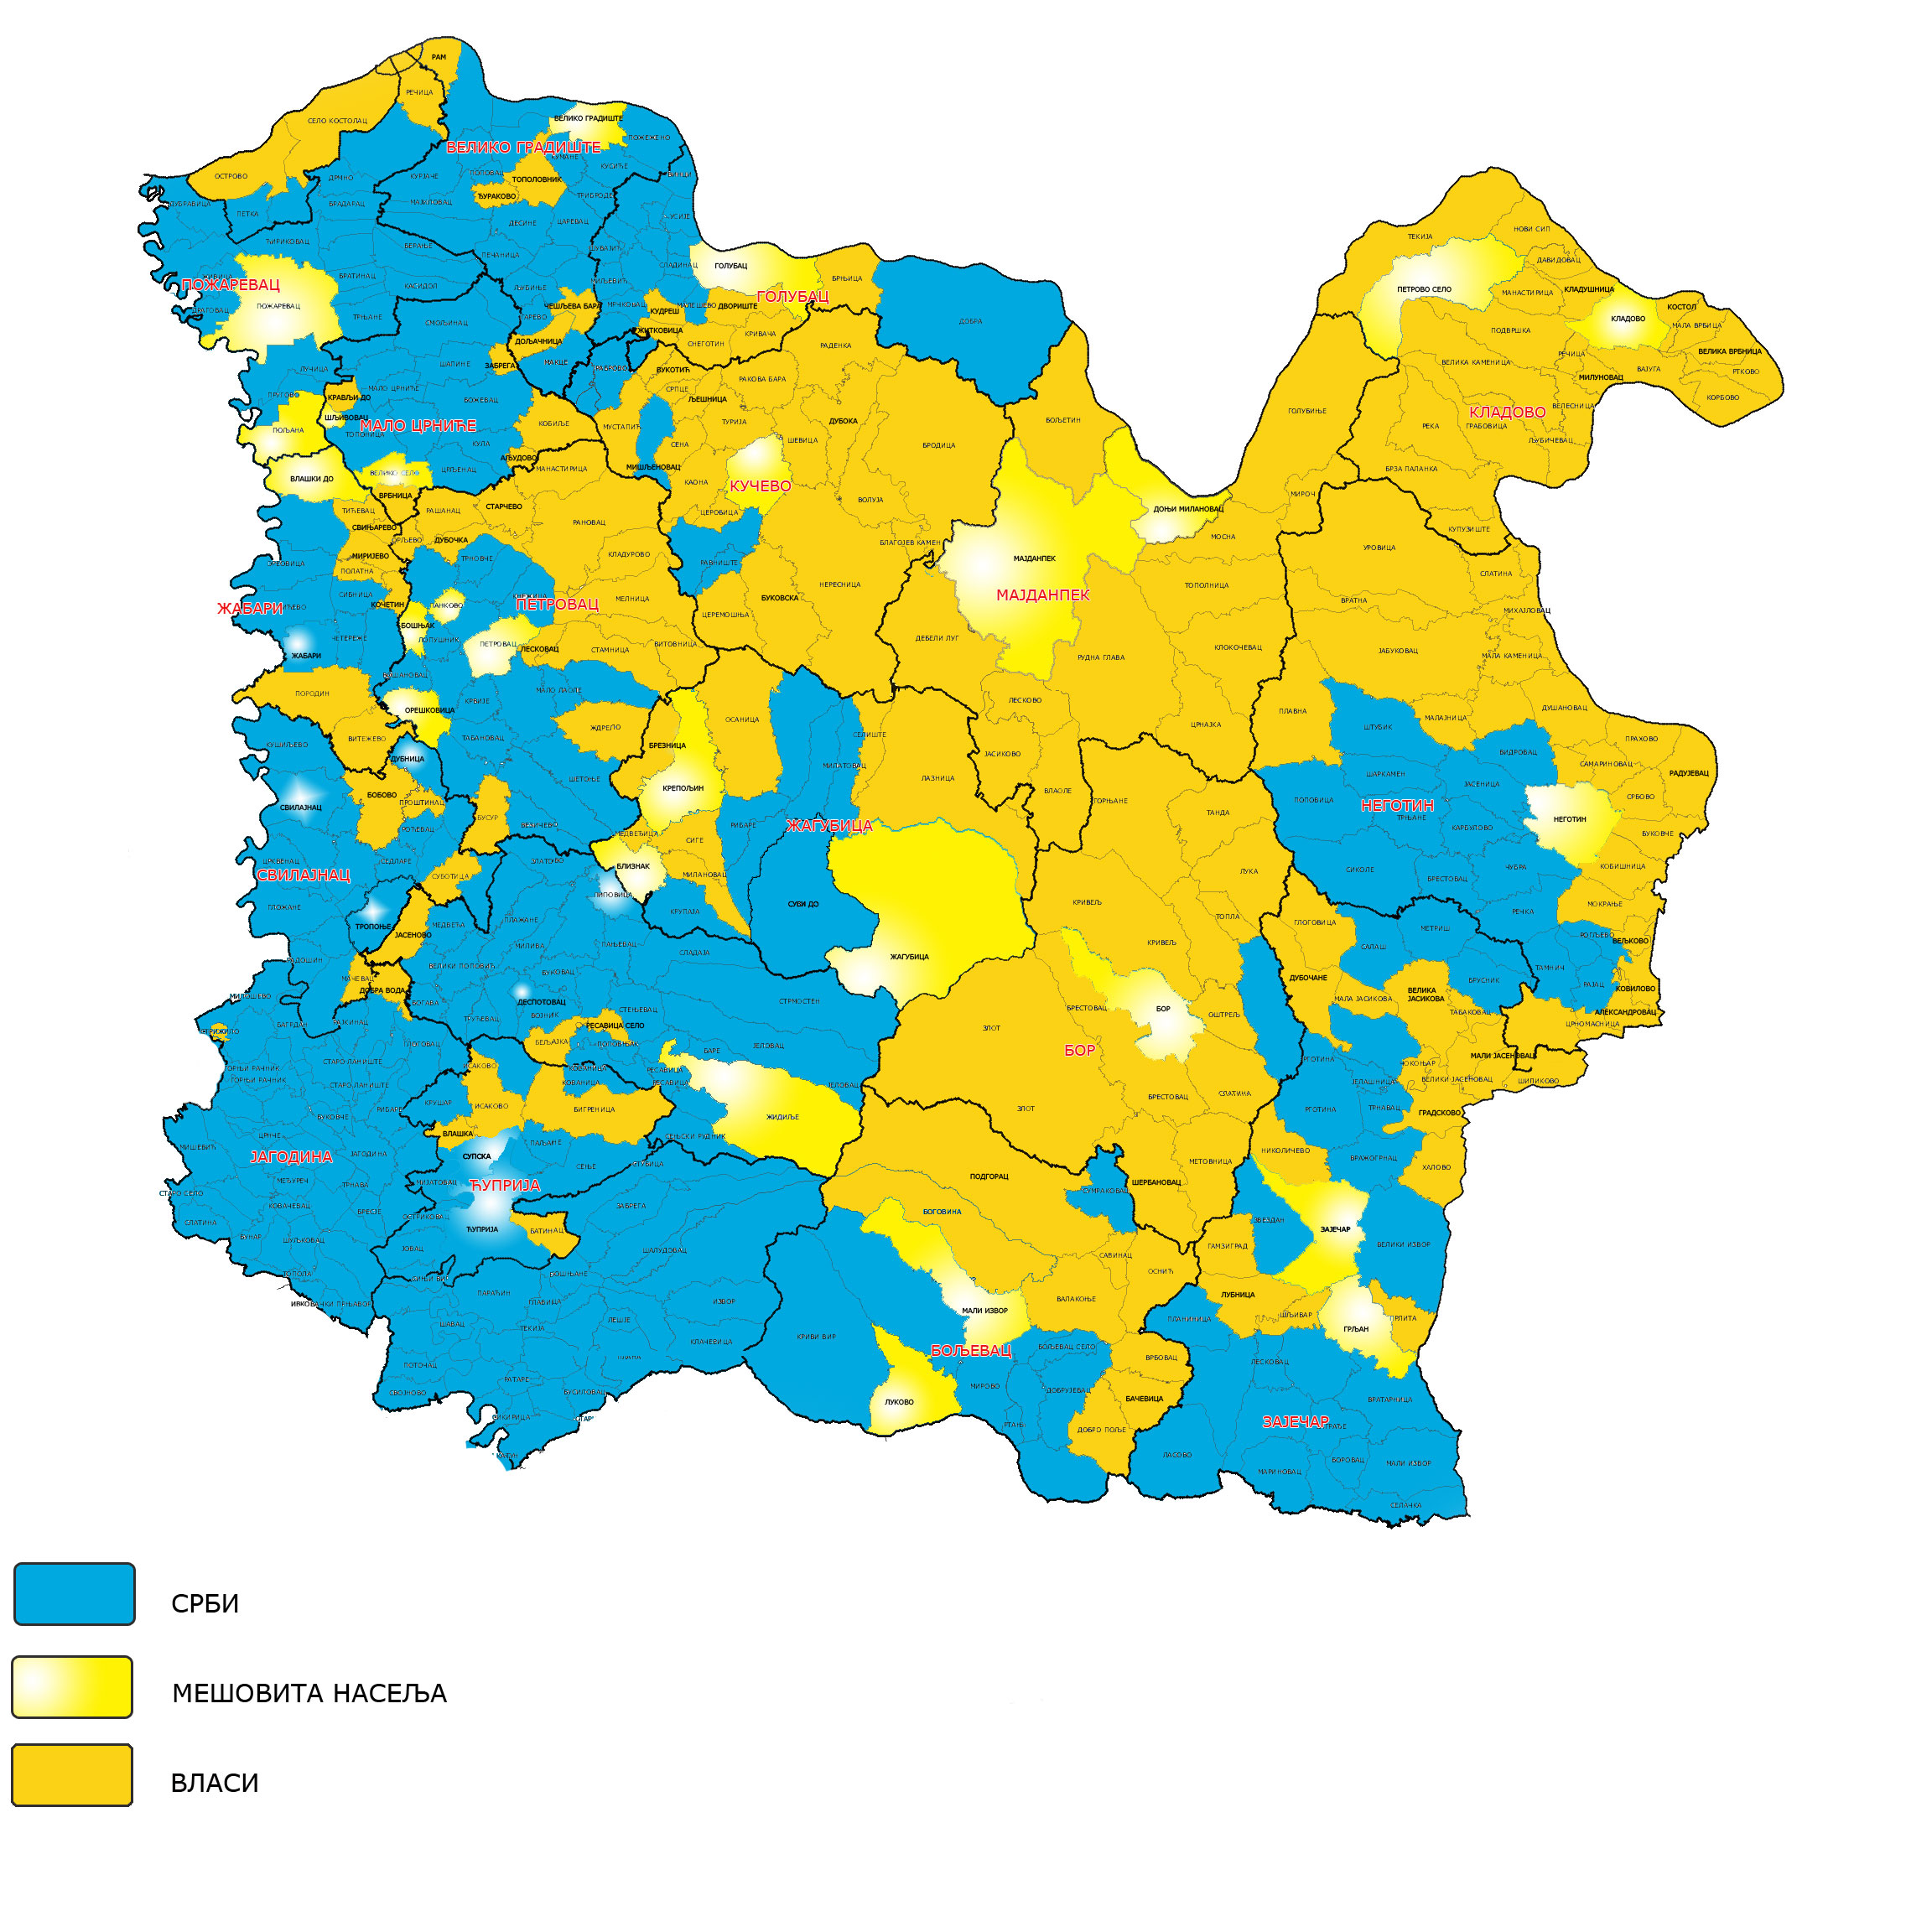 etnicka karta srbije 2011 Referendum o statusu Vojvodine   Stranica 29   Forum.hr etnicka karta srbije 2011